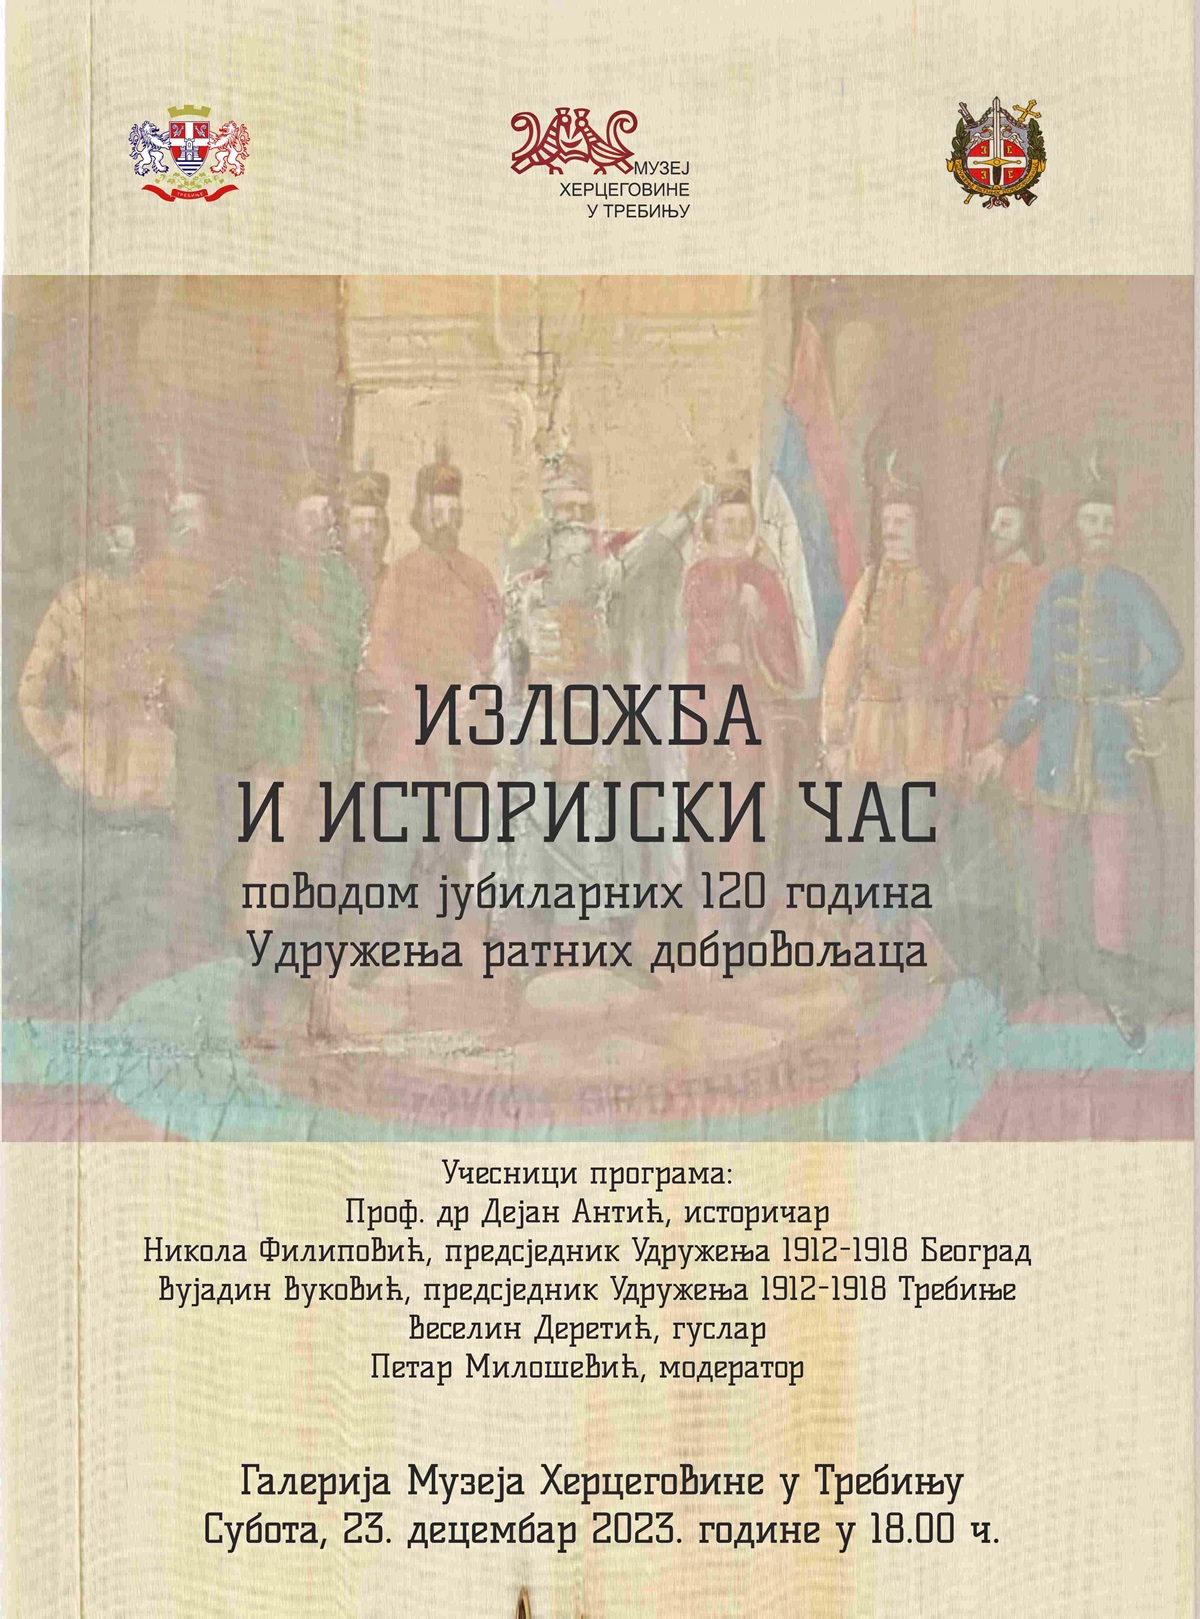 Muzej Hercegovine: Izložba i istorijski čas povodom 120 godina Udruženja ratnih dobrovoljaca 1903-2023